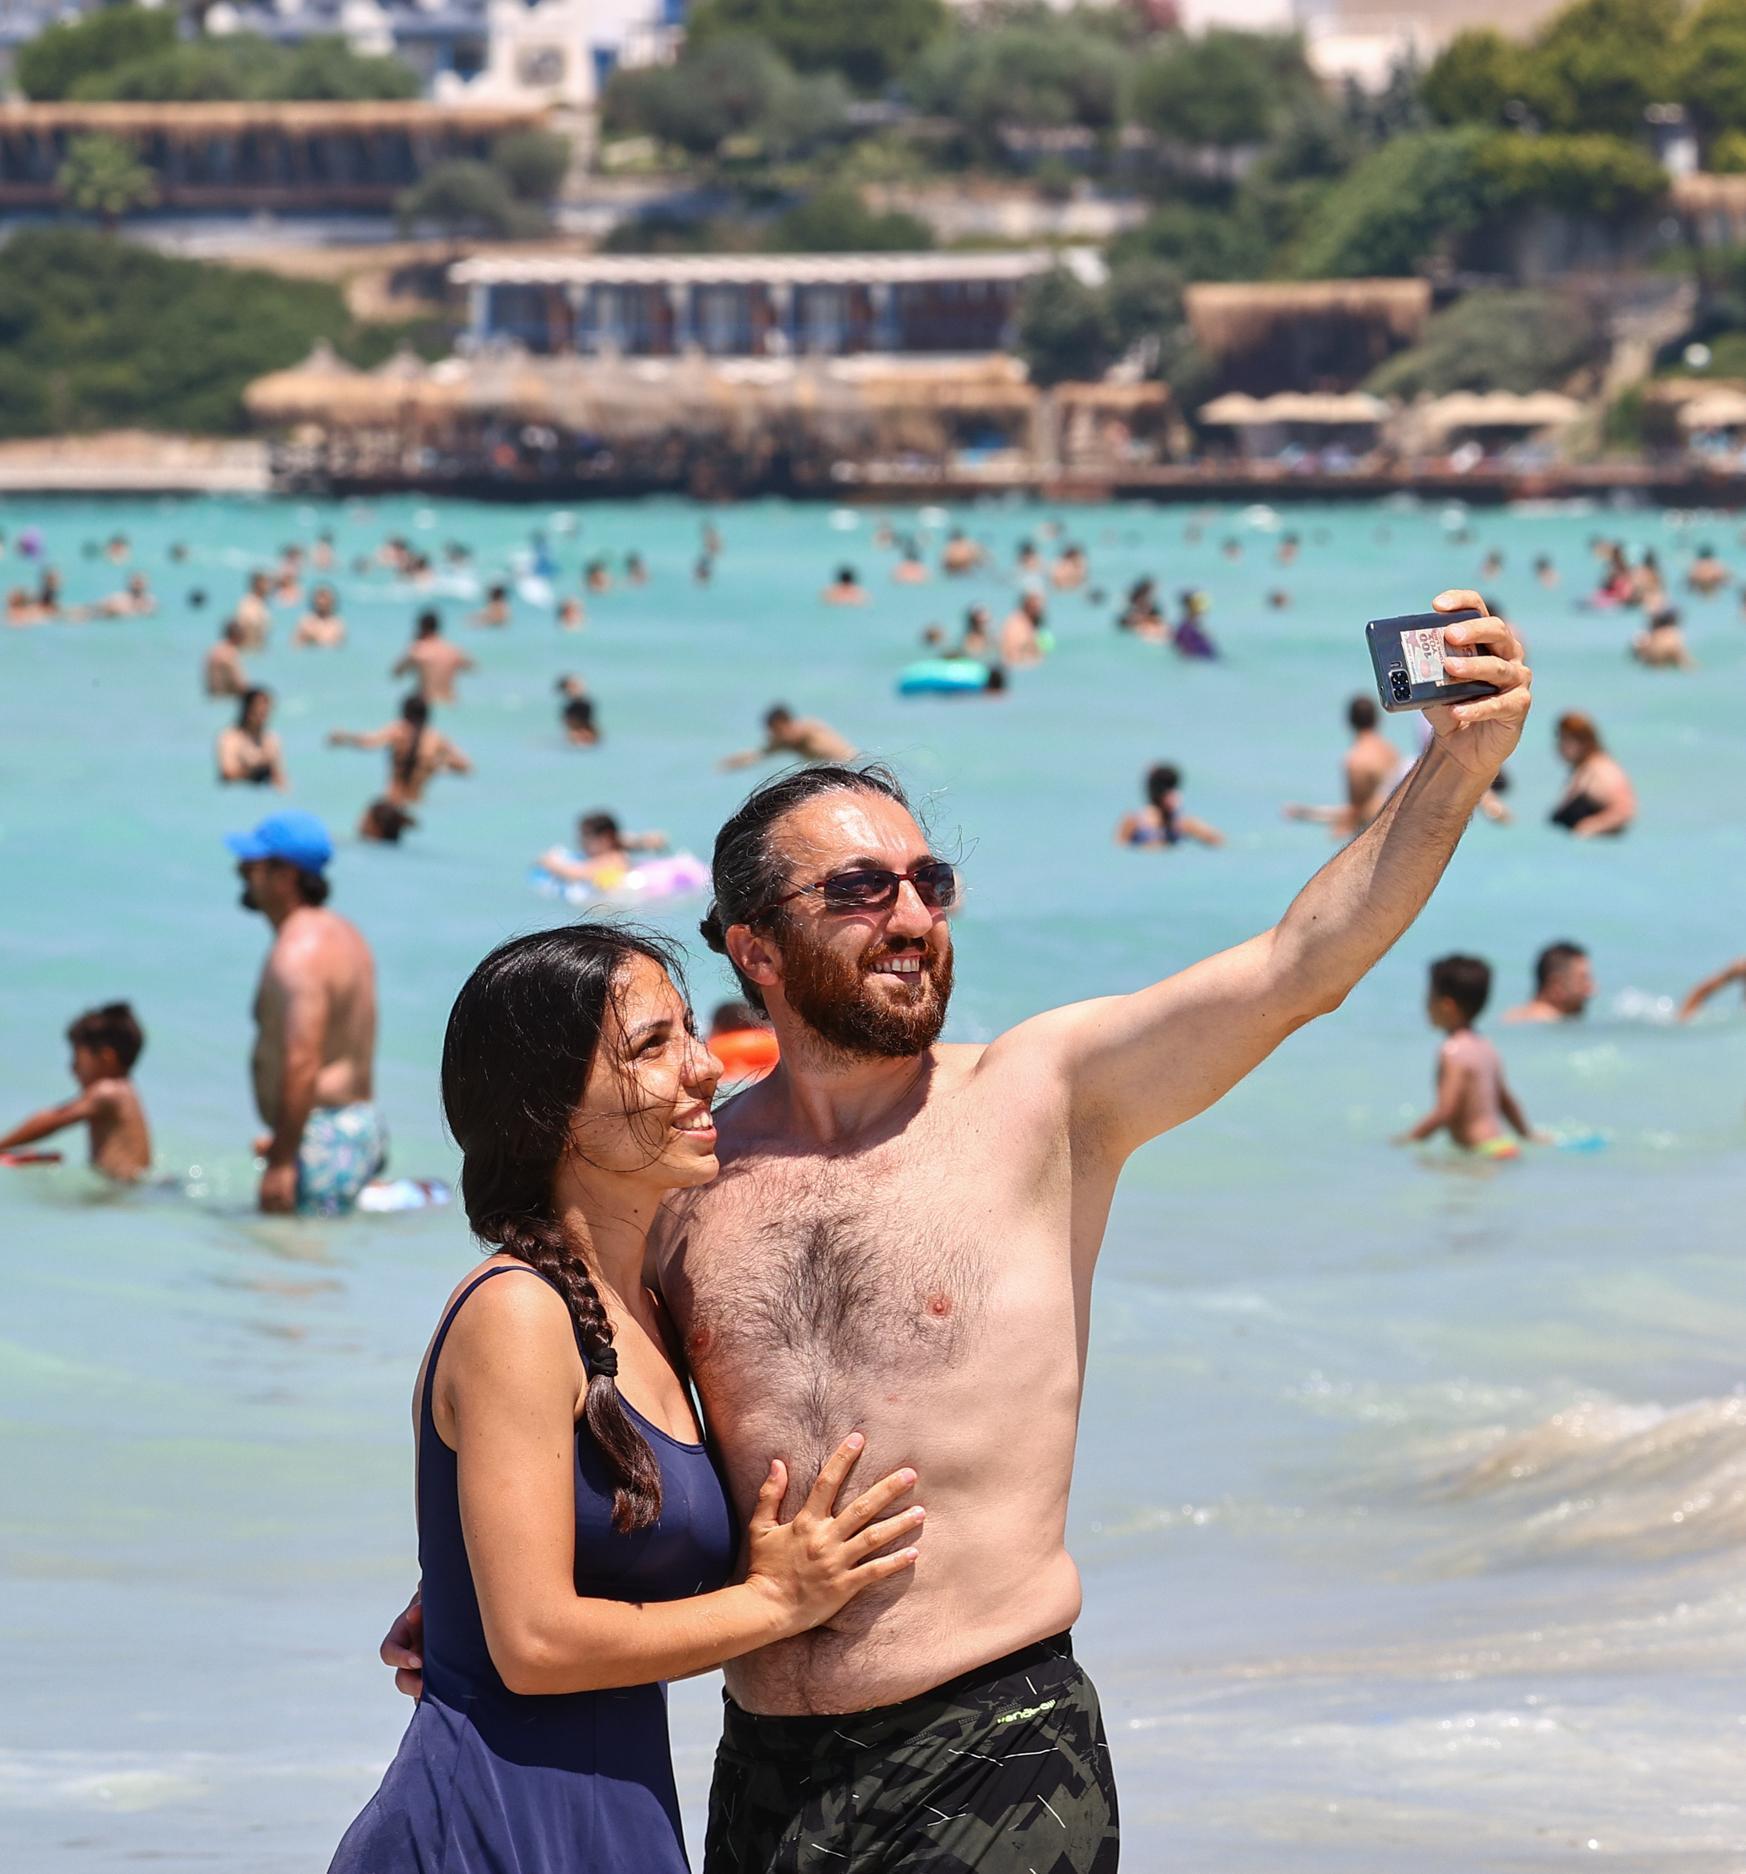 Son dakika: Antalyaya yabancı turistler akın etti Çeşme tıklım tıklım doldu